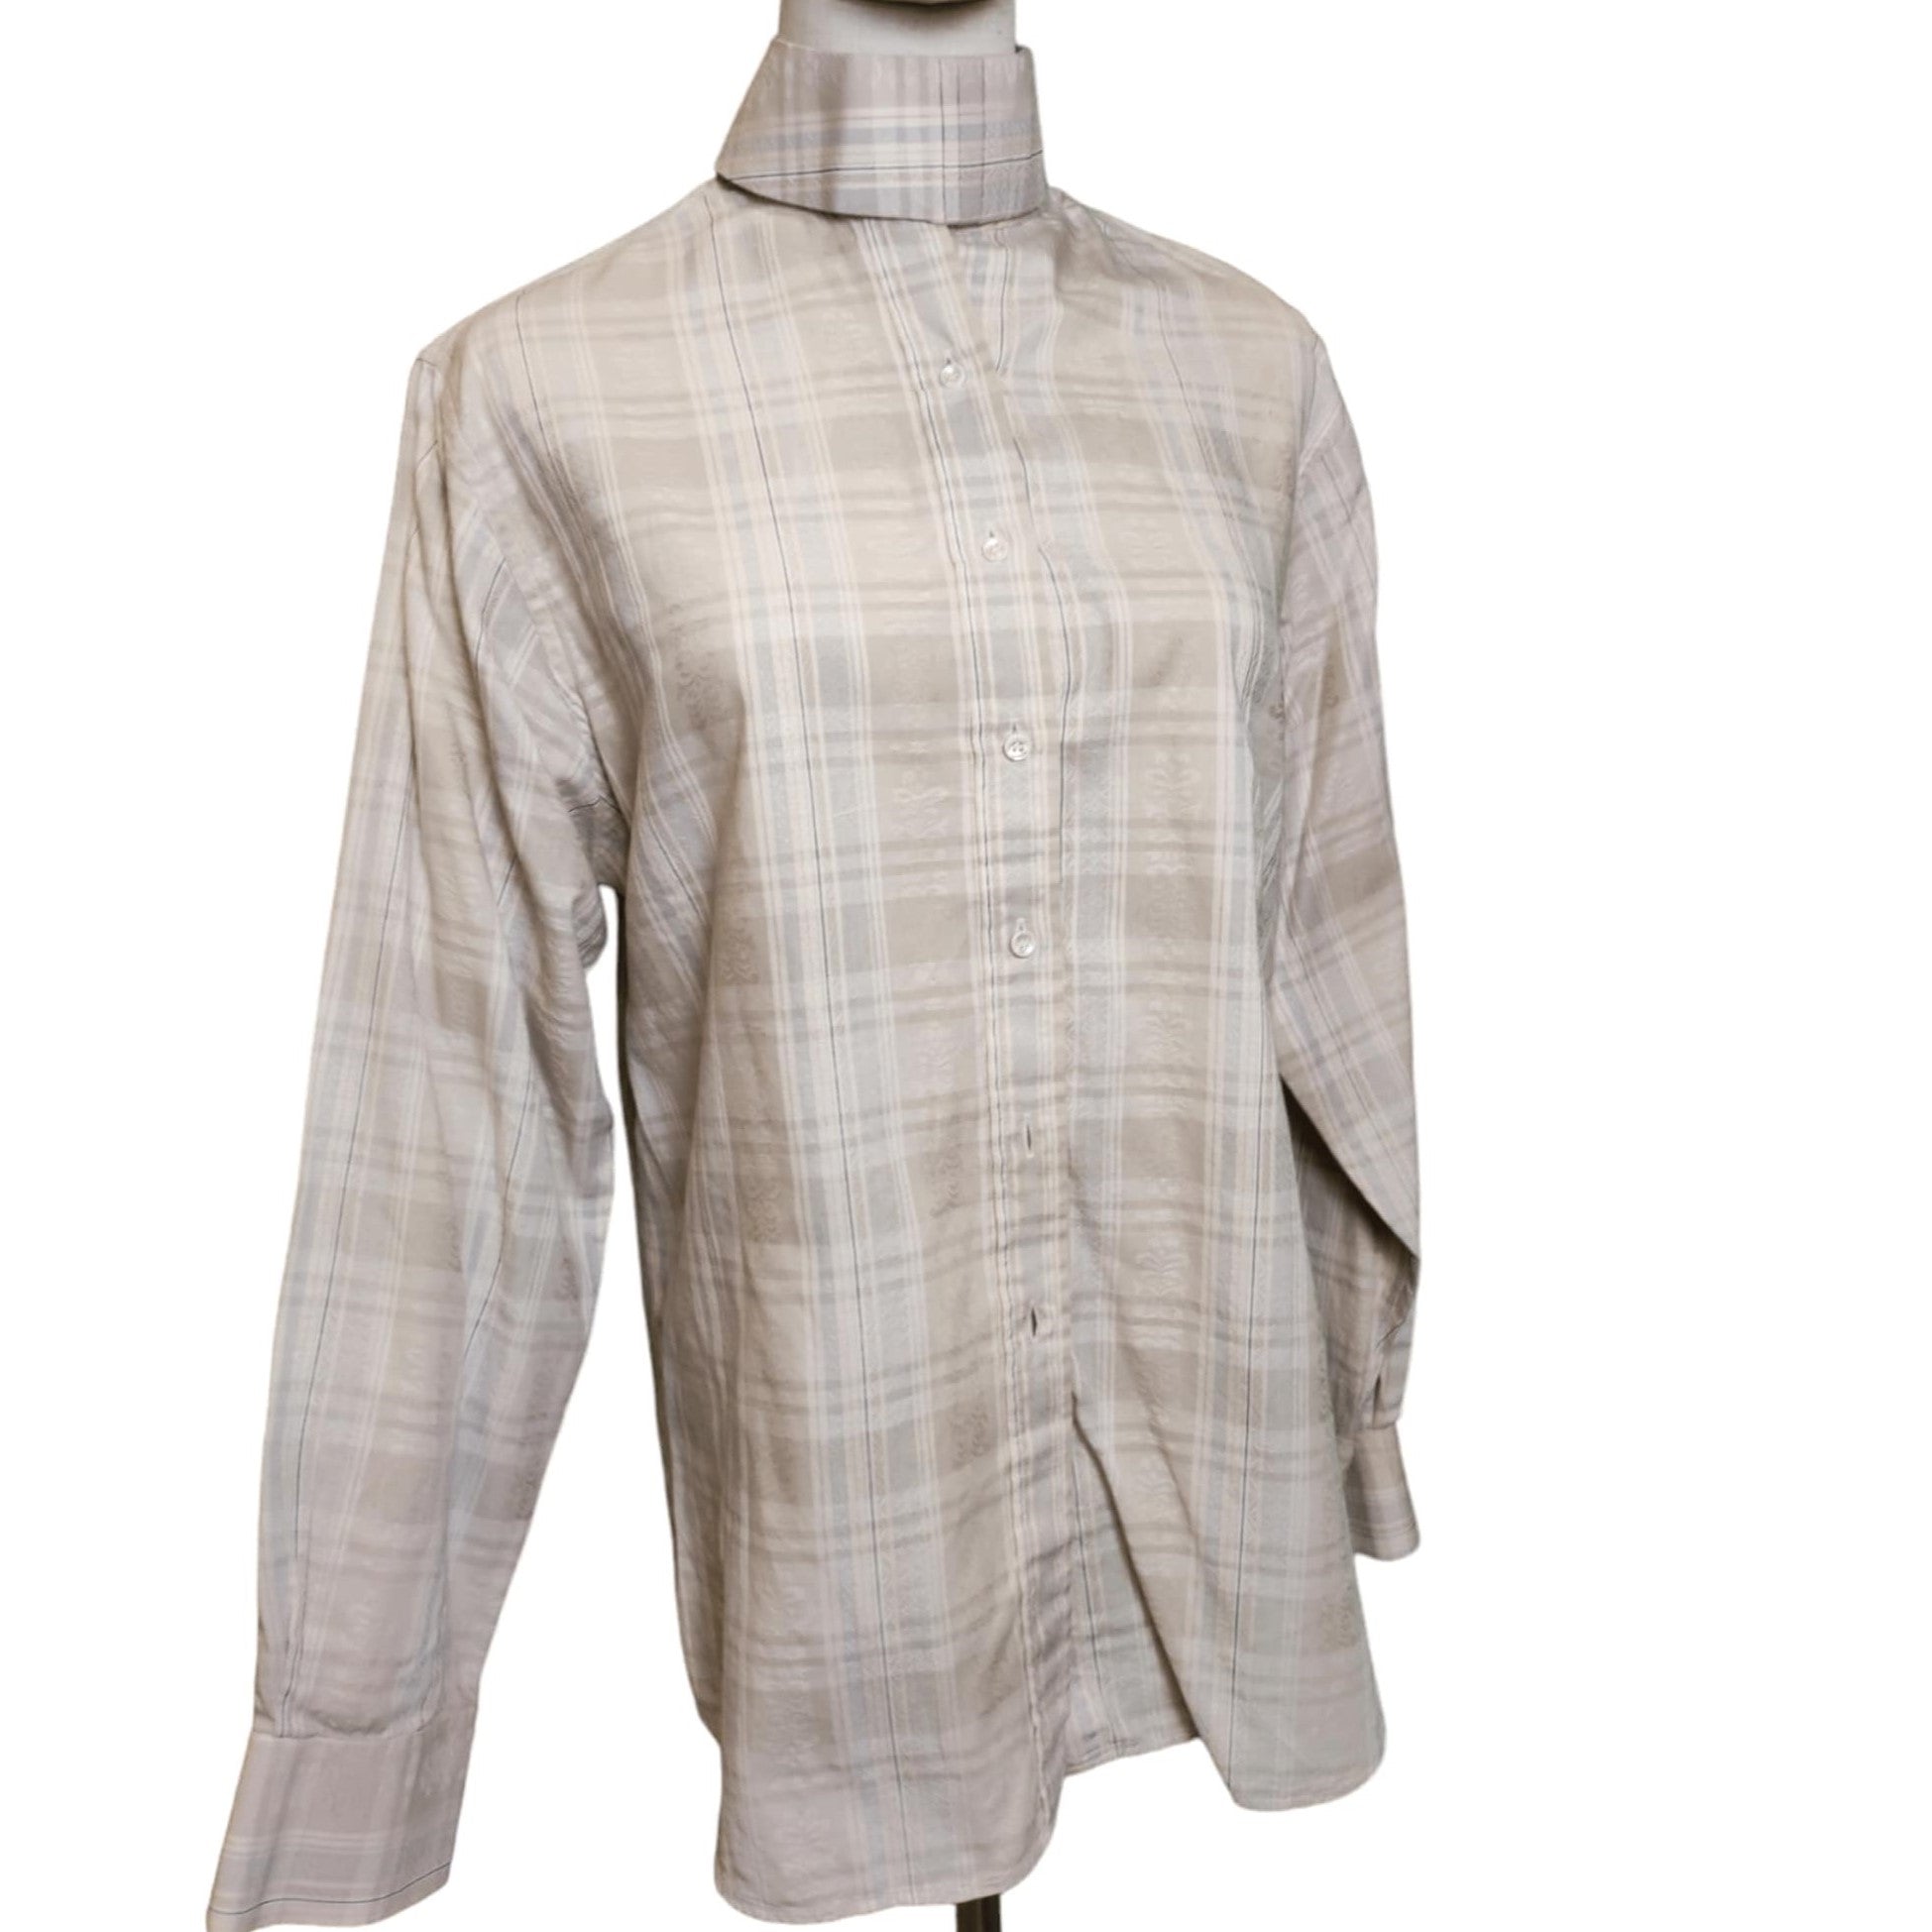 KHS EXCHANGE Van Teal Striped English Dress Shirt